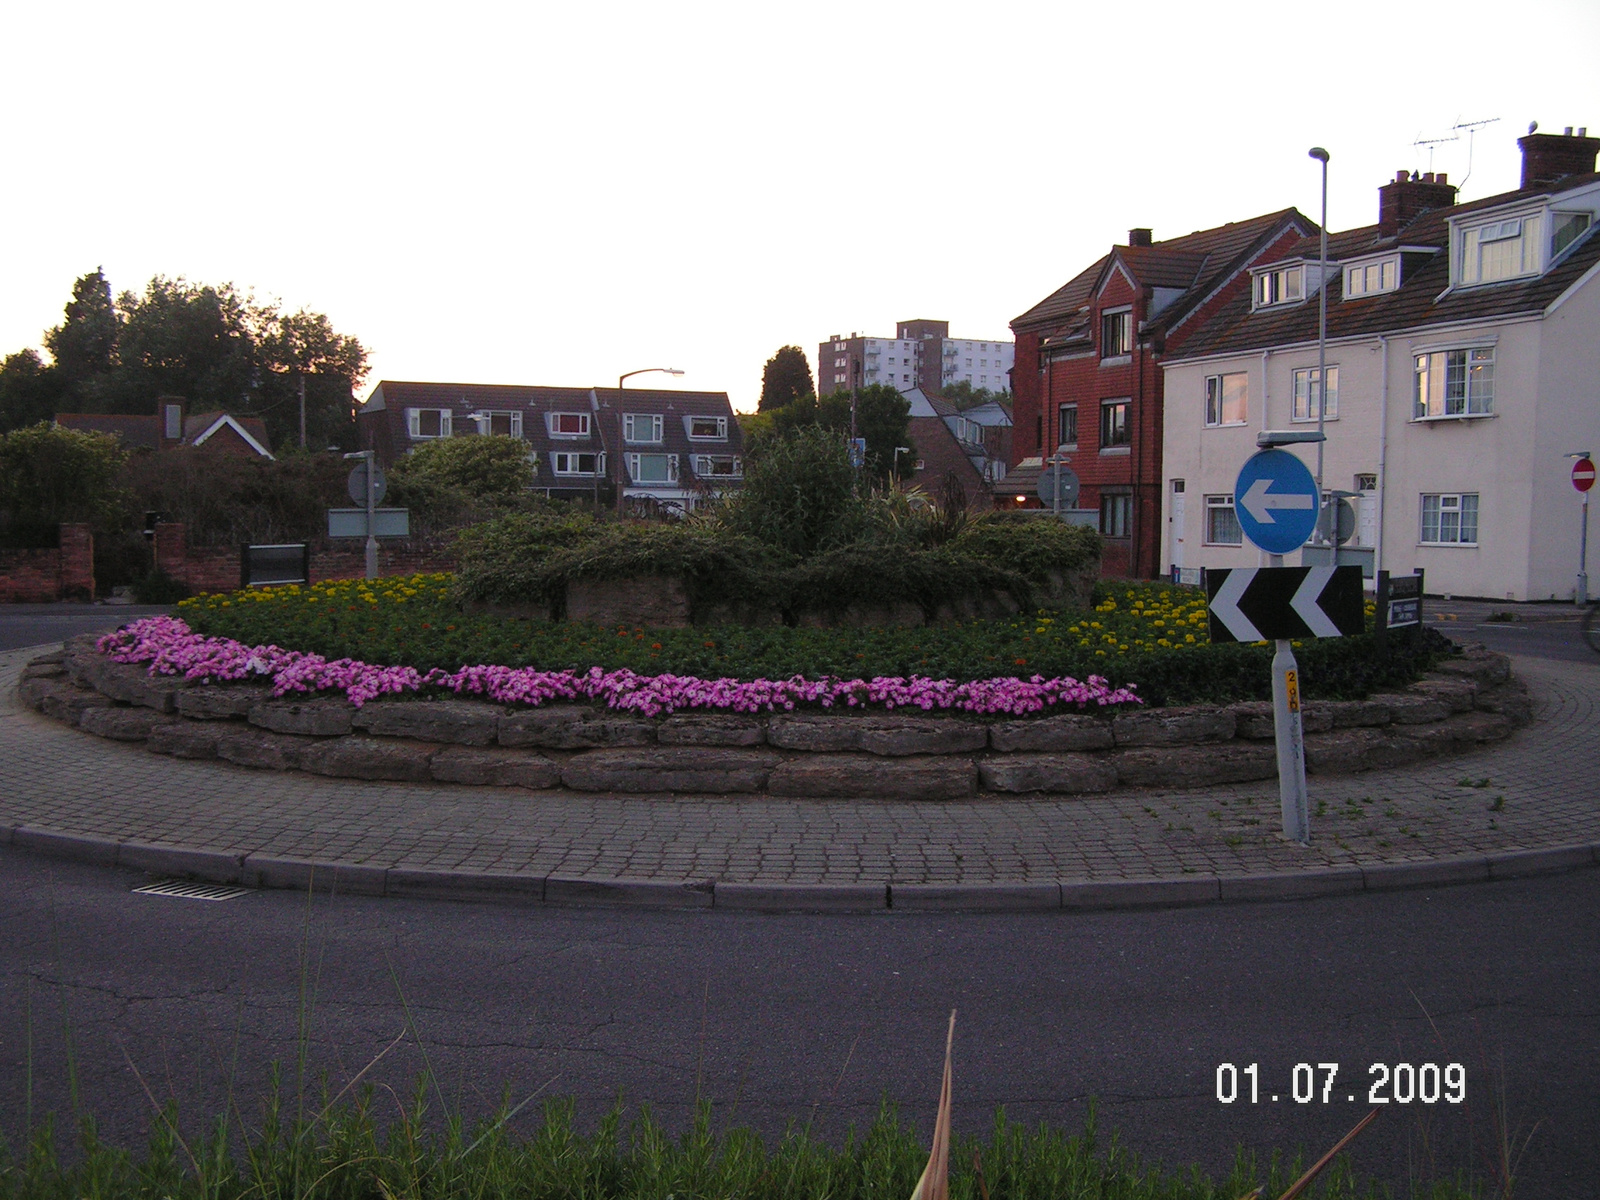 Roundabout:):):)